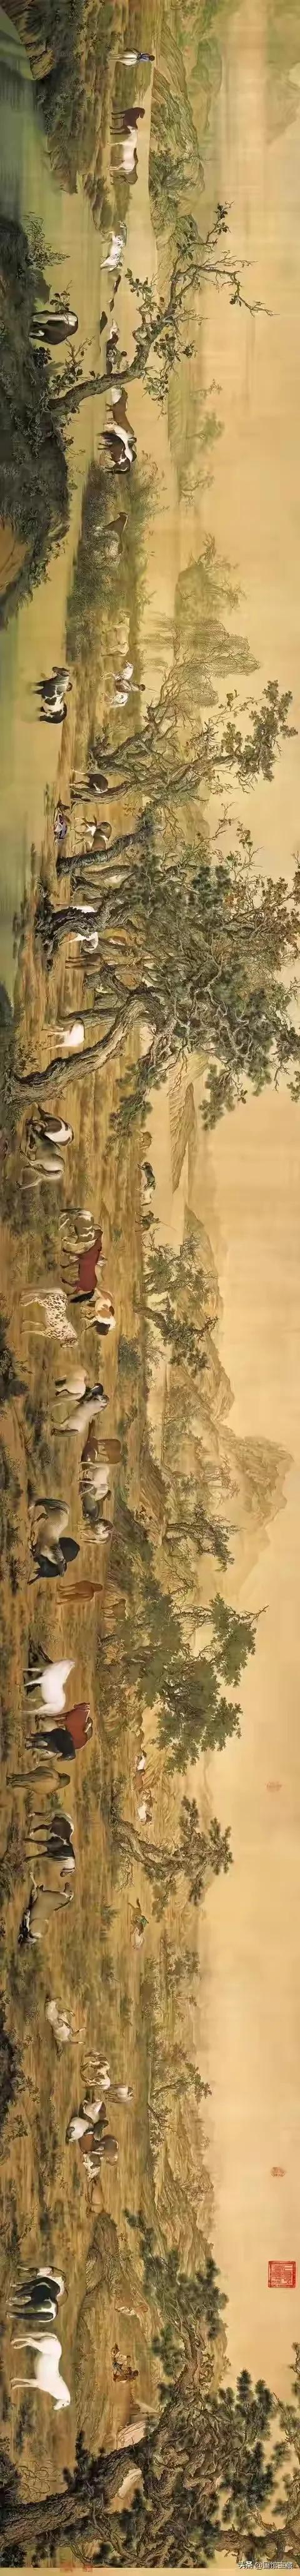 中国10幅国宝级传世名画，都是无价之宝，多少钱都不卖